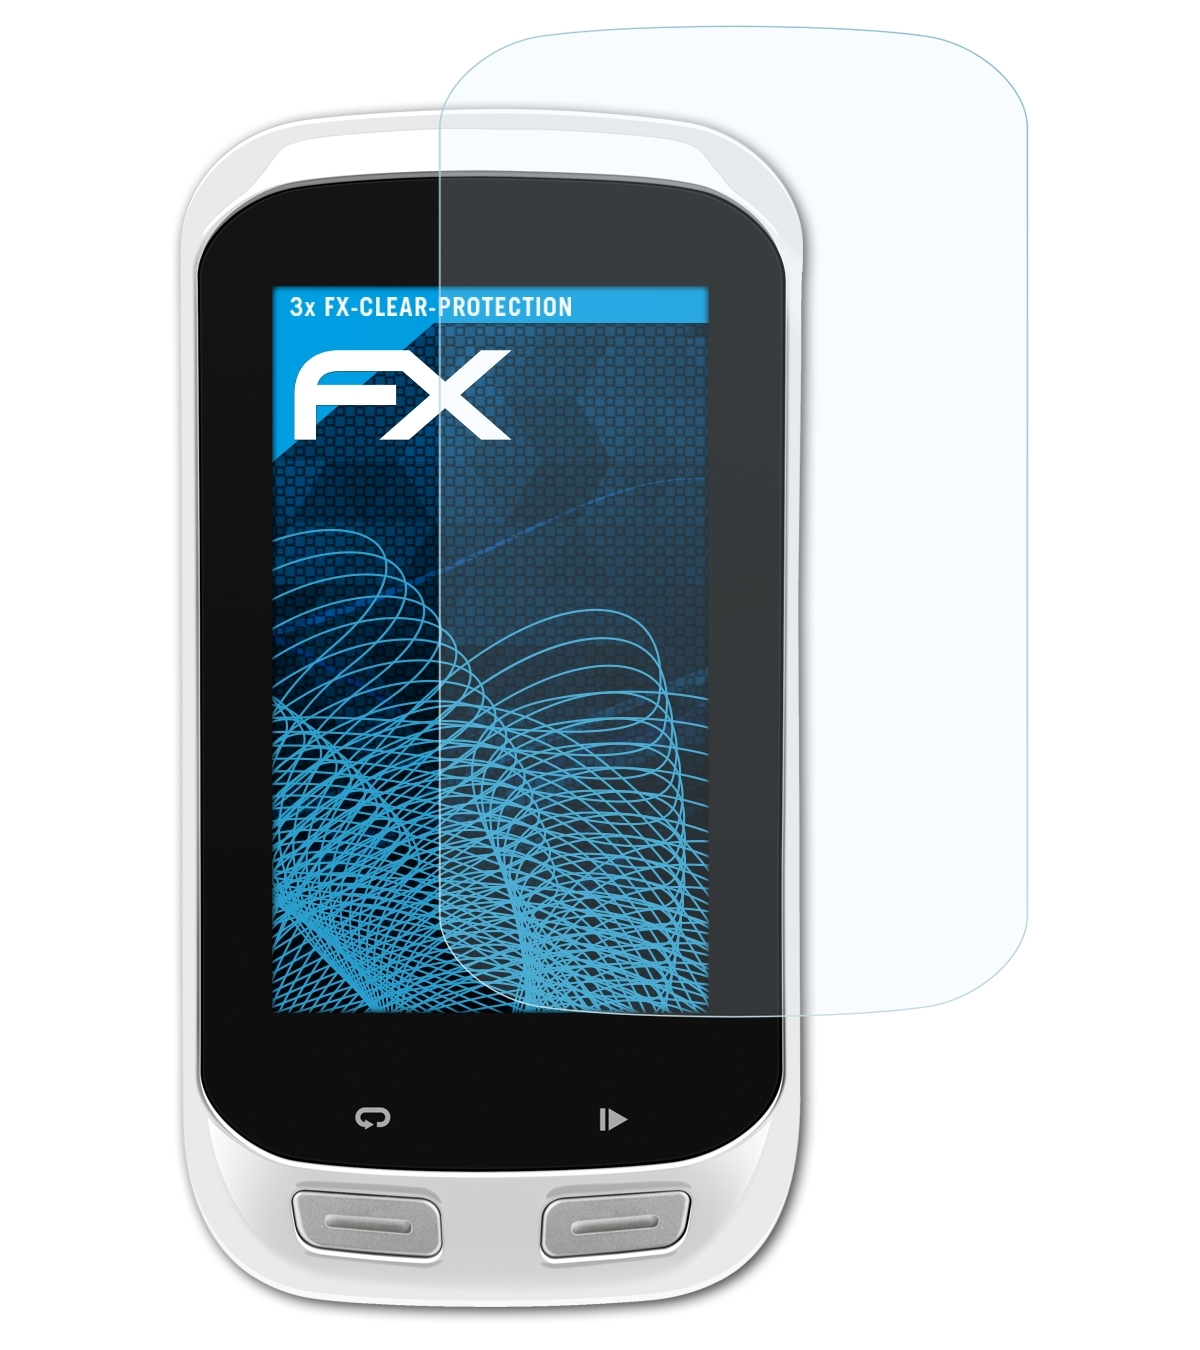 1000) Garmin ATFOLIX Explore FX-Clear Edge 3x Displayschutz(für